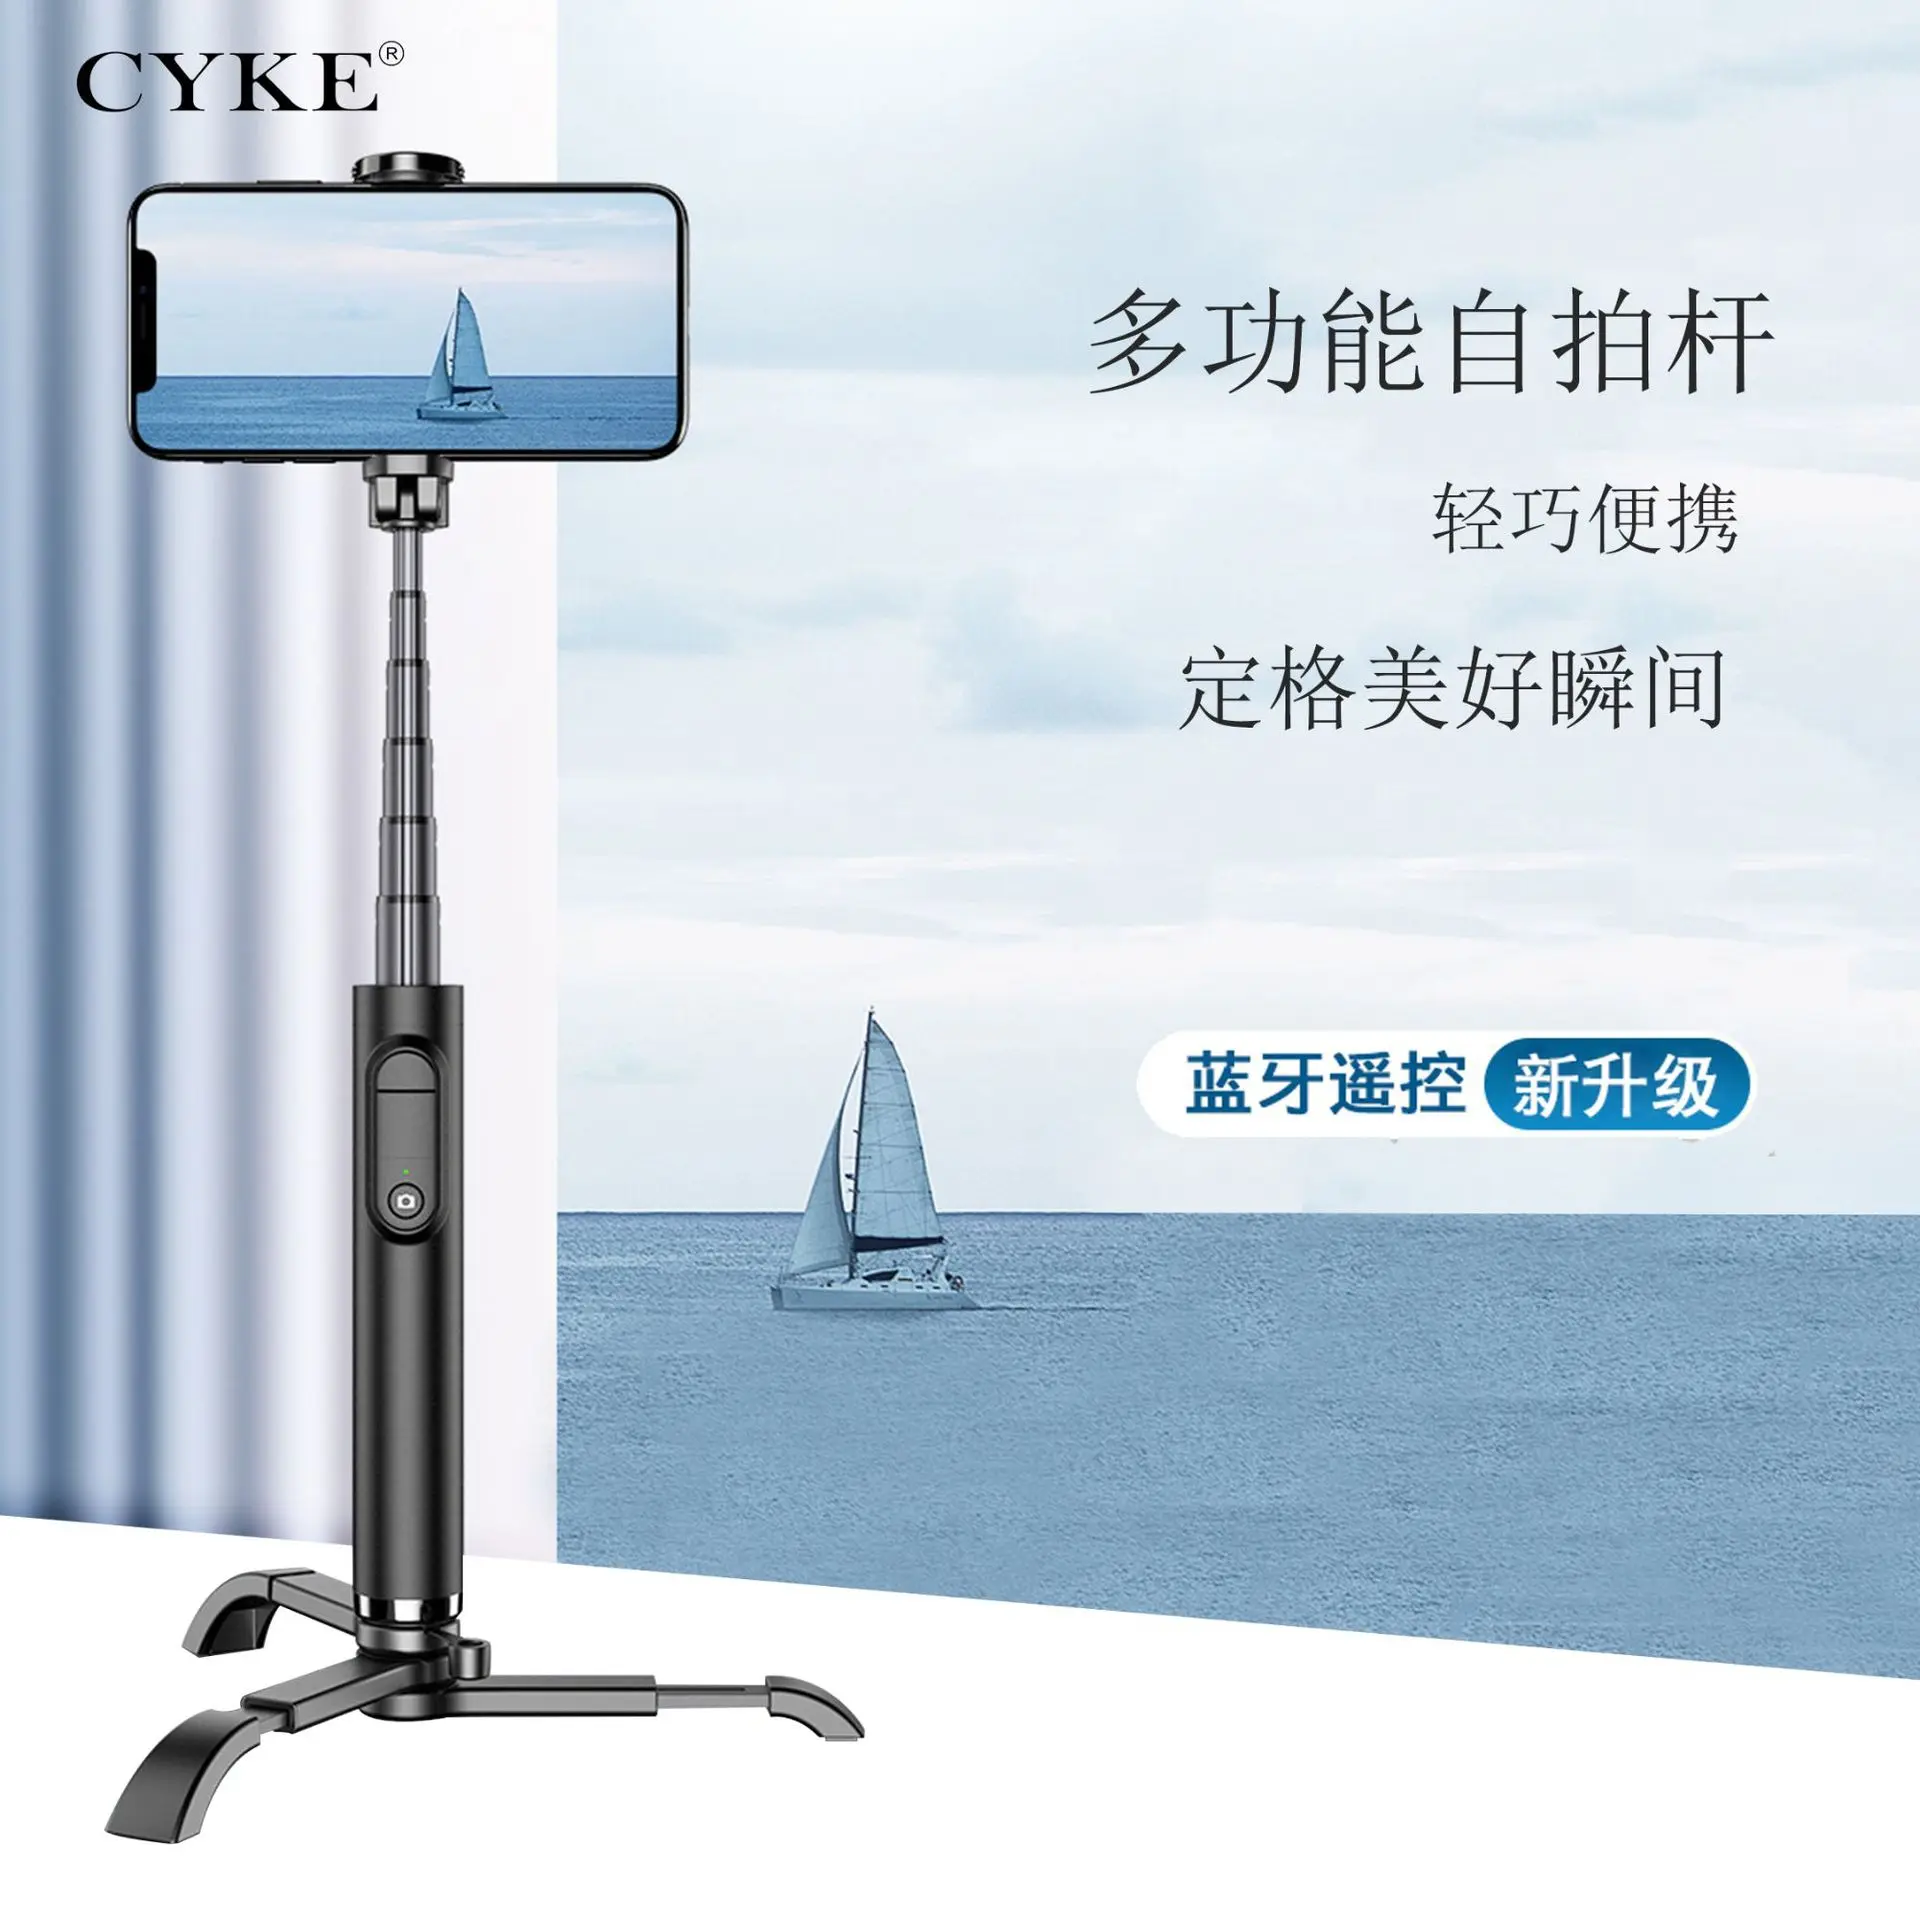 Cyke стиль M11 hua ying Bluetooth расширение ссылка алюминиевый сплав селфи палка вращающийся портативный с штативом